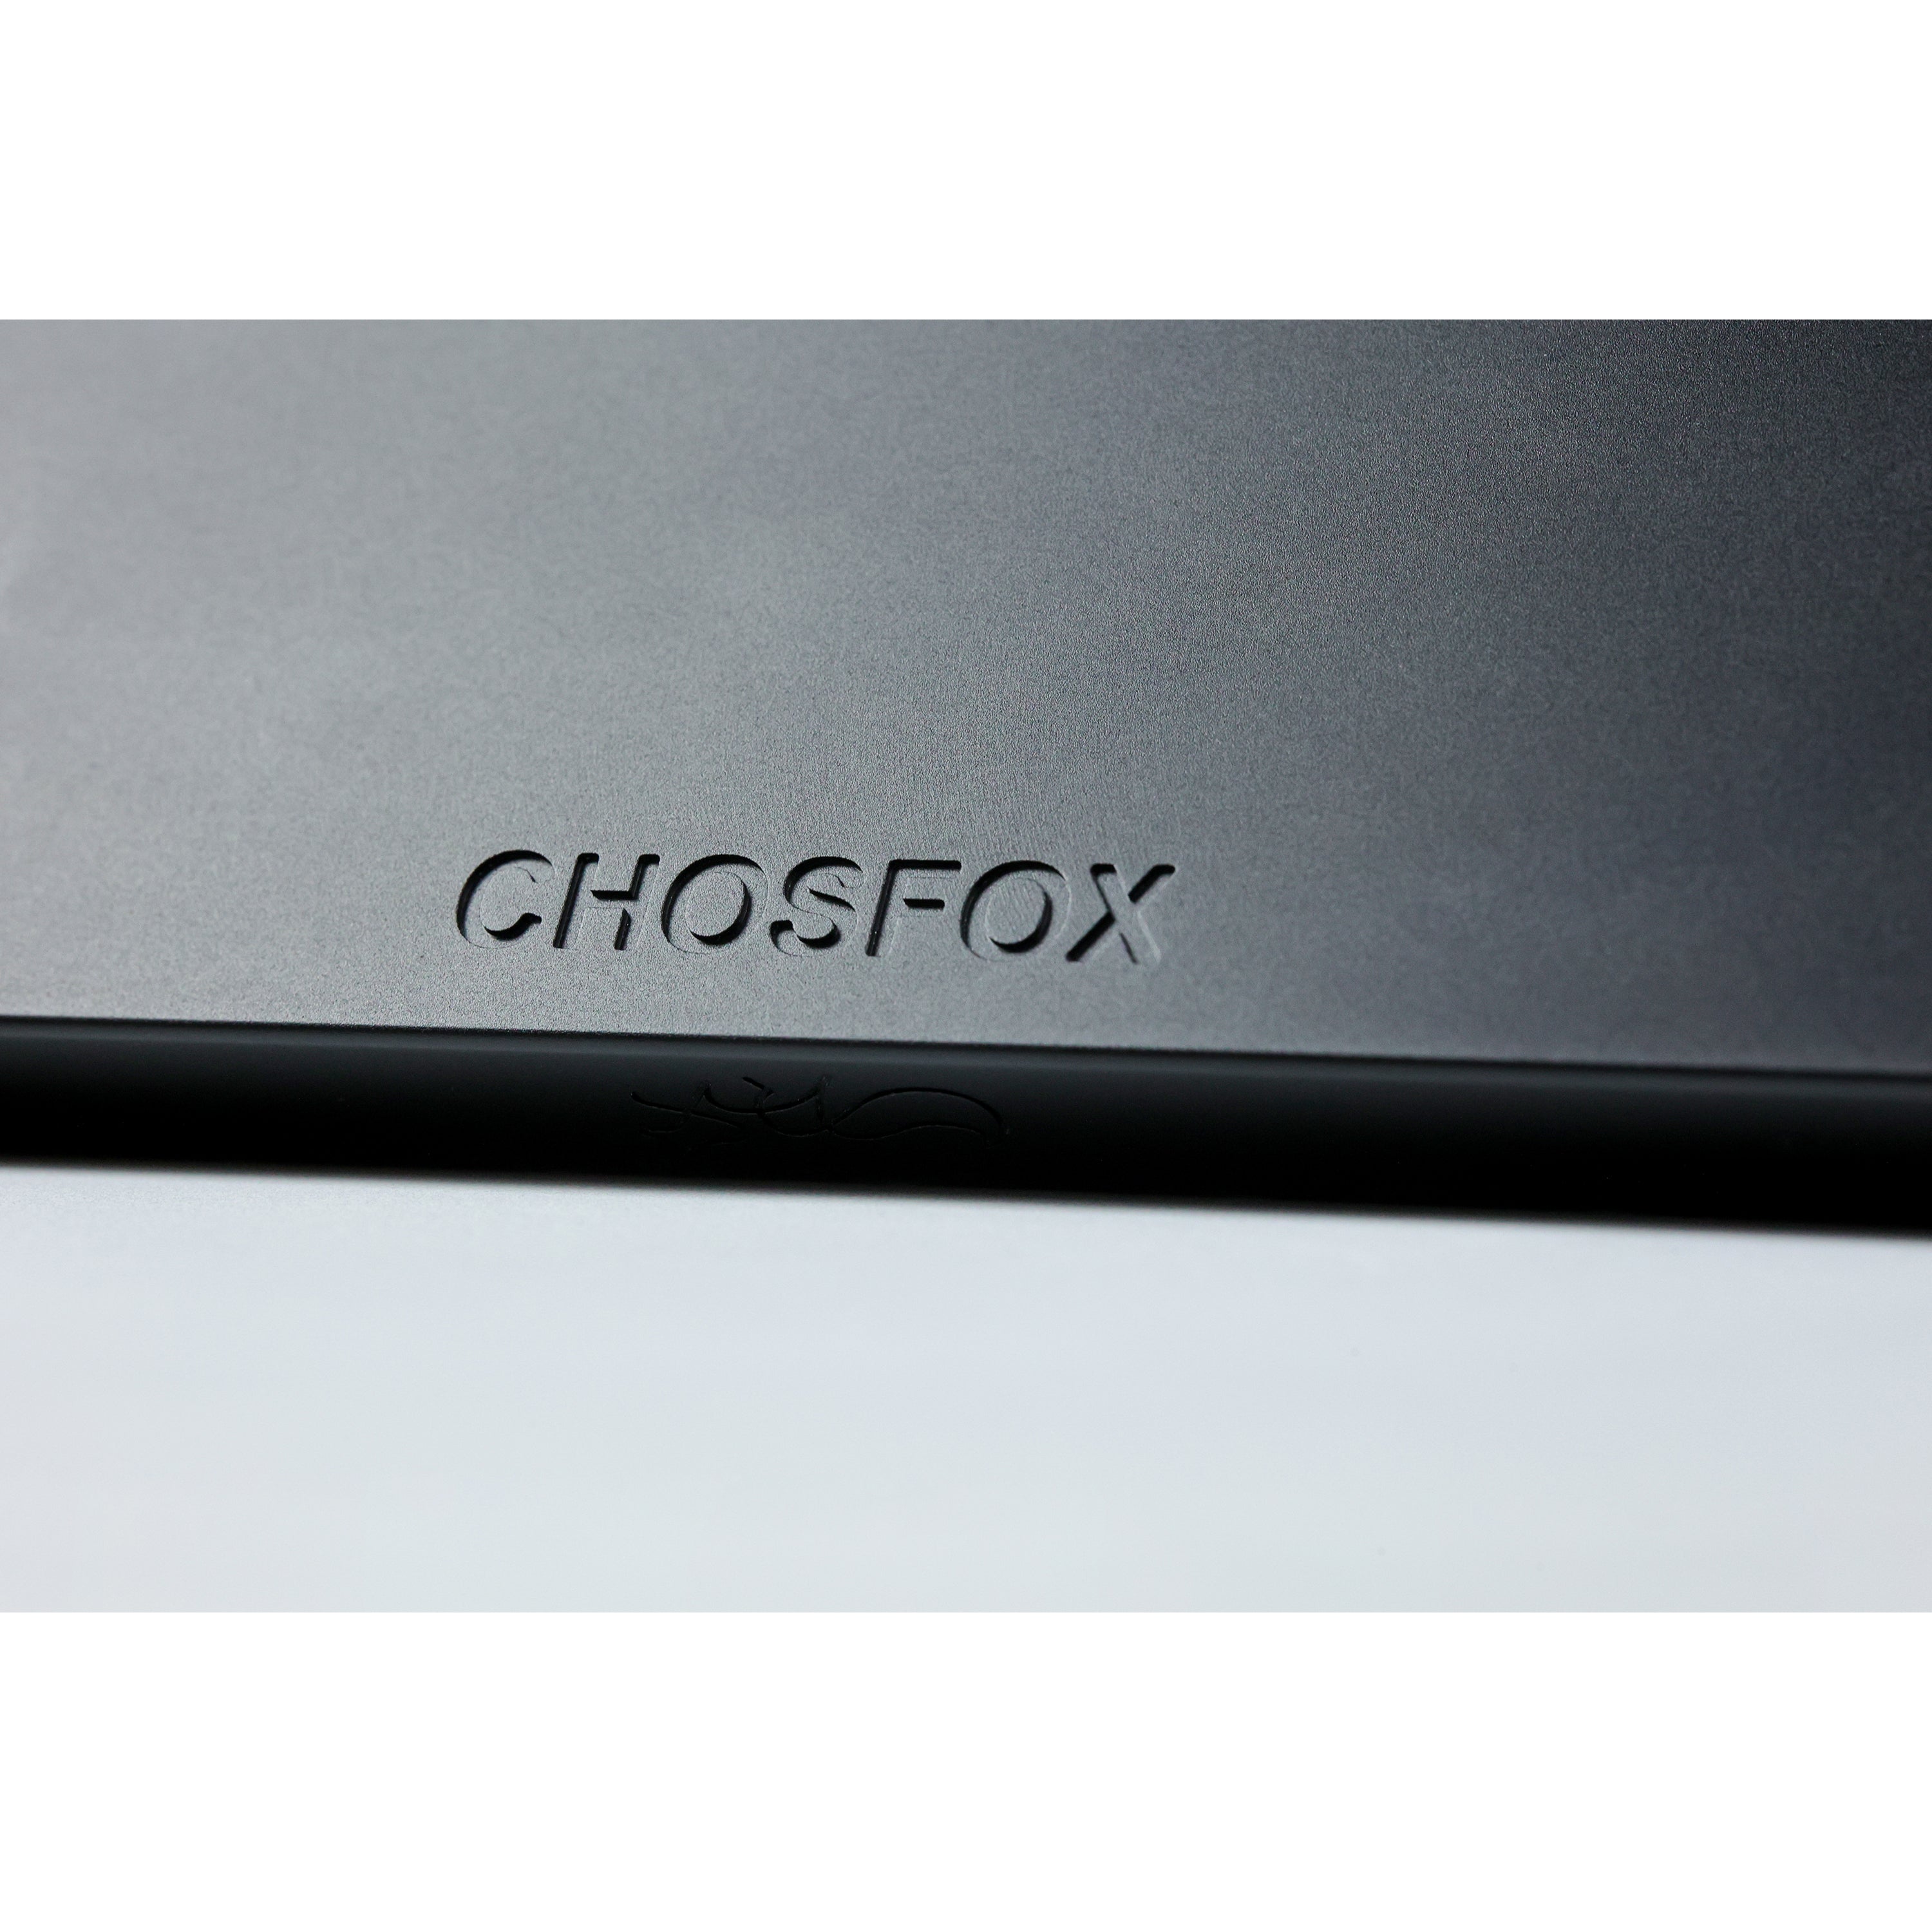 Chosfox x Sporewoh | bancouver40 Keyboard Kit